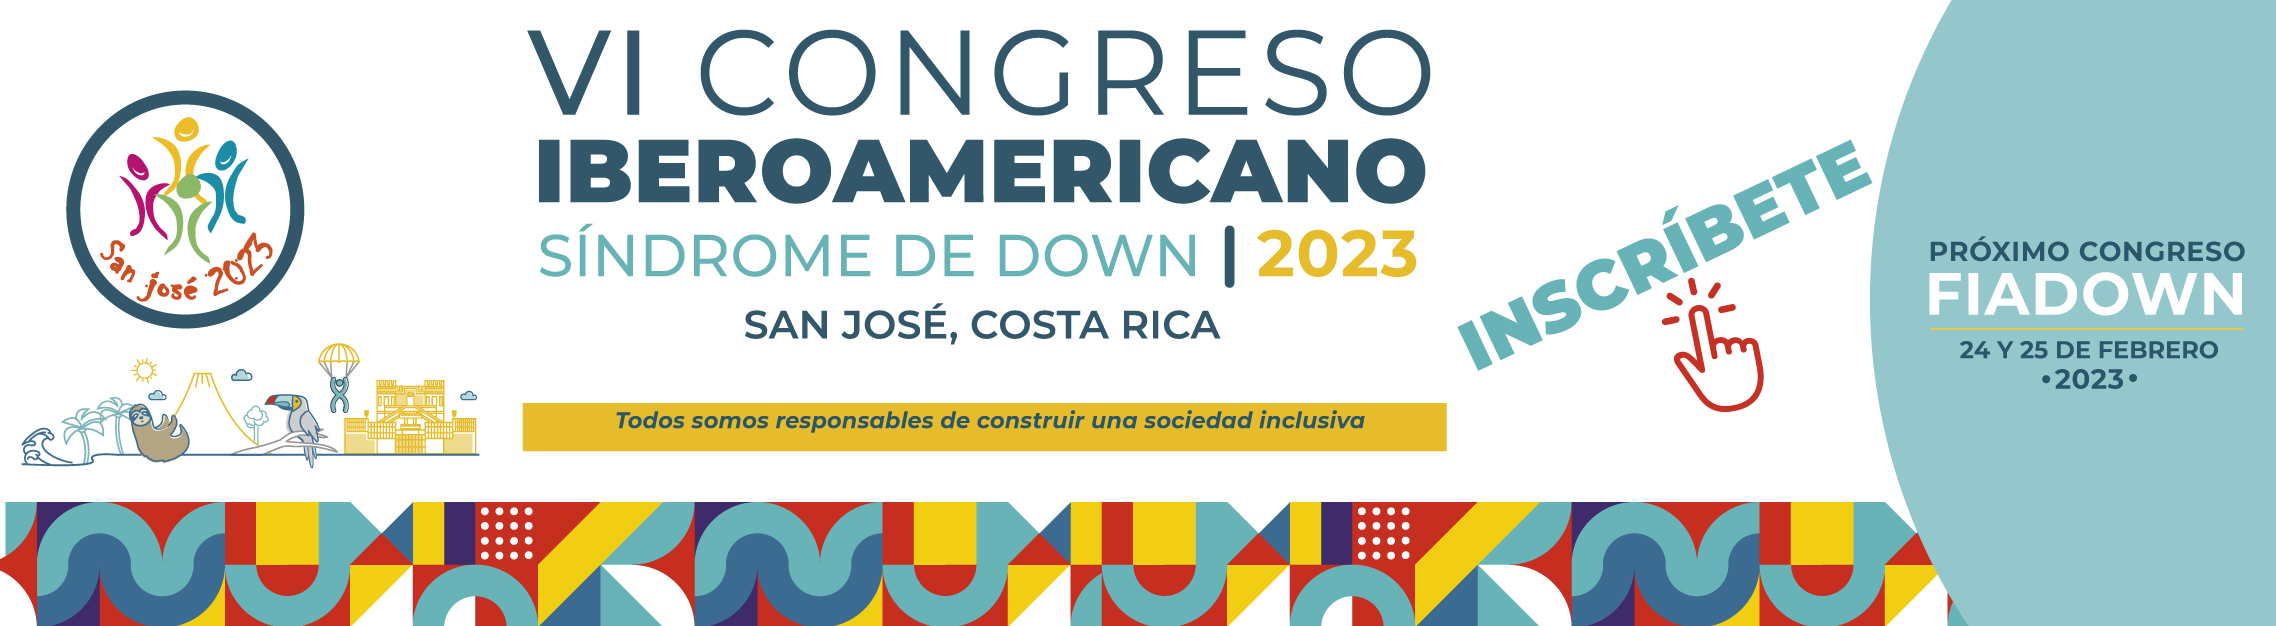 VI Congreso Iberoamericano de Síndrome de Down. Inscríbete aquí